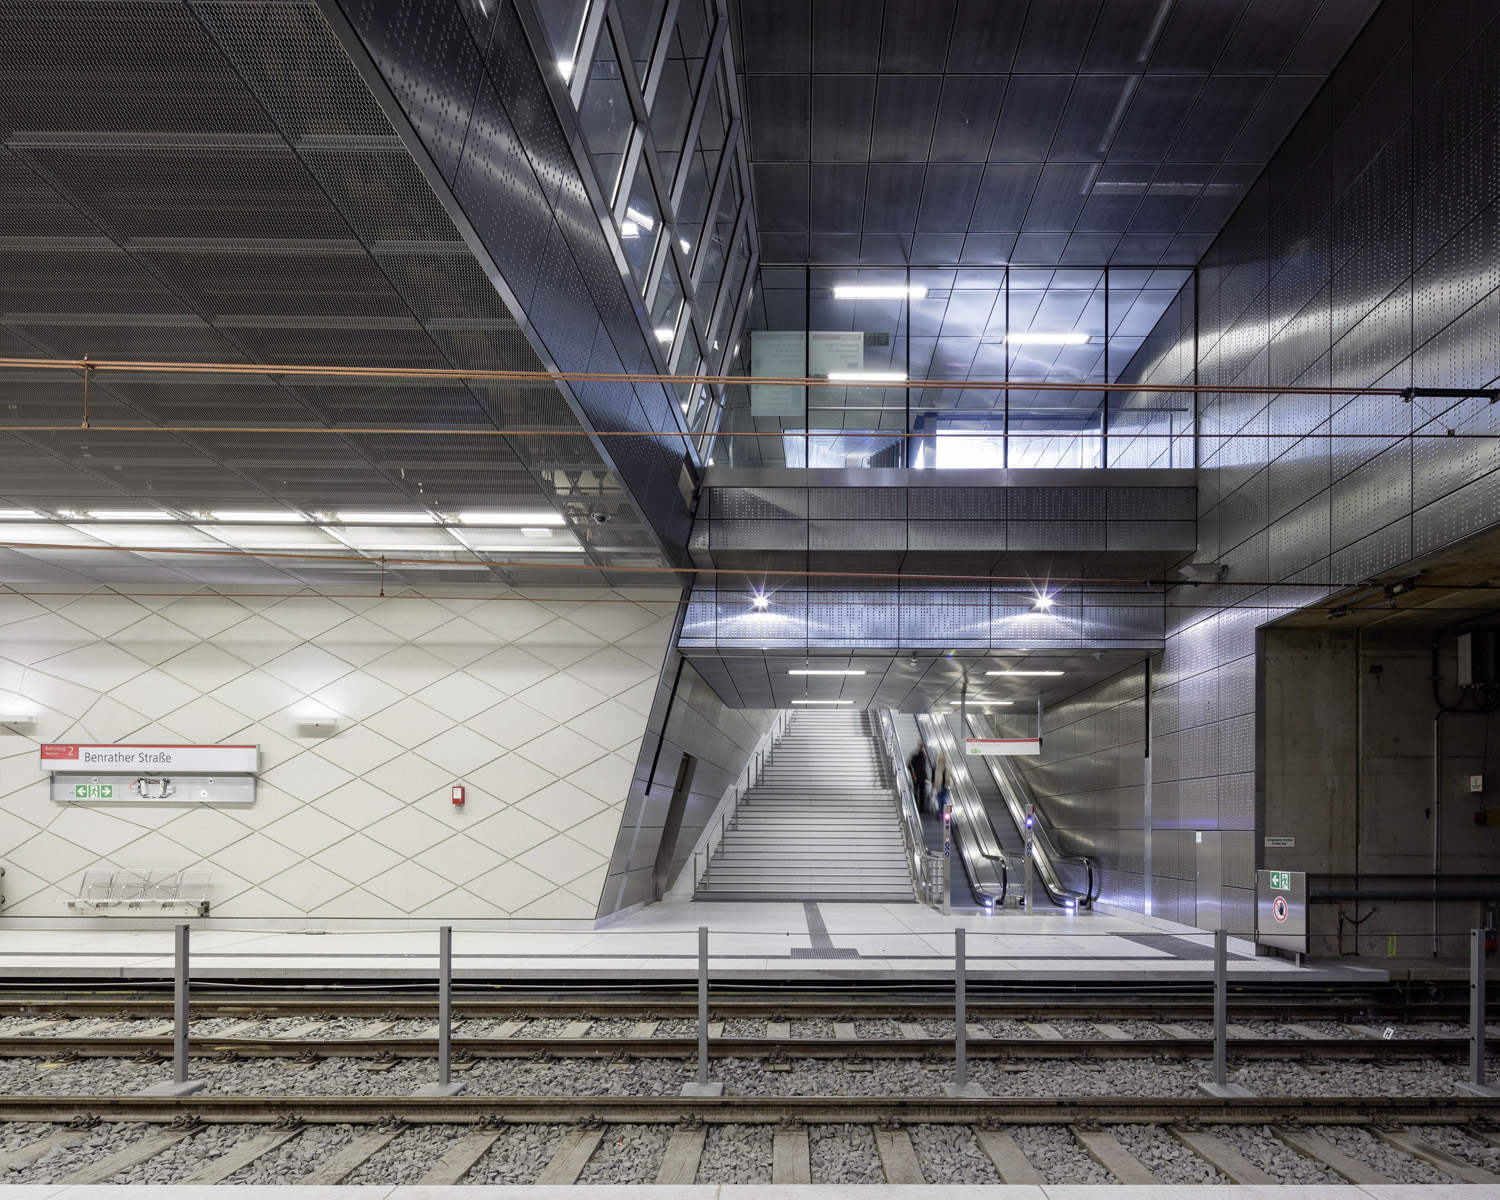 Wehrhahnlinie Duesseldorf, Stations, Benrather Strasse, Concept, Thomas Stricker, netzwerkarchitekten, Bahnhof frontal